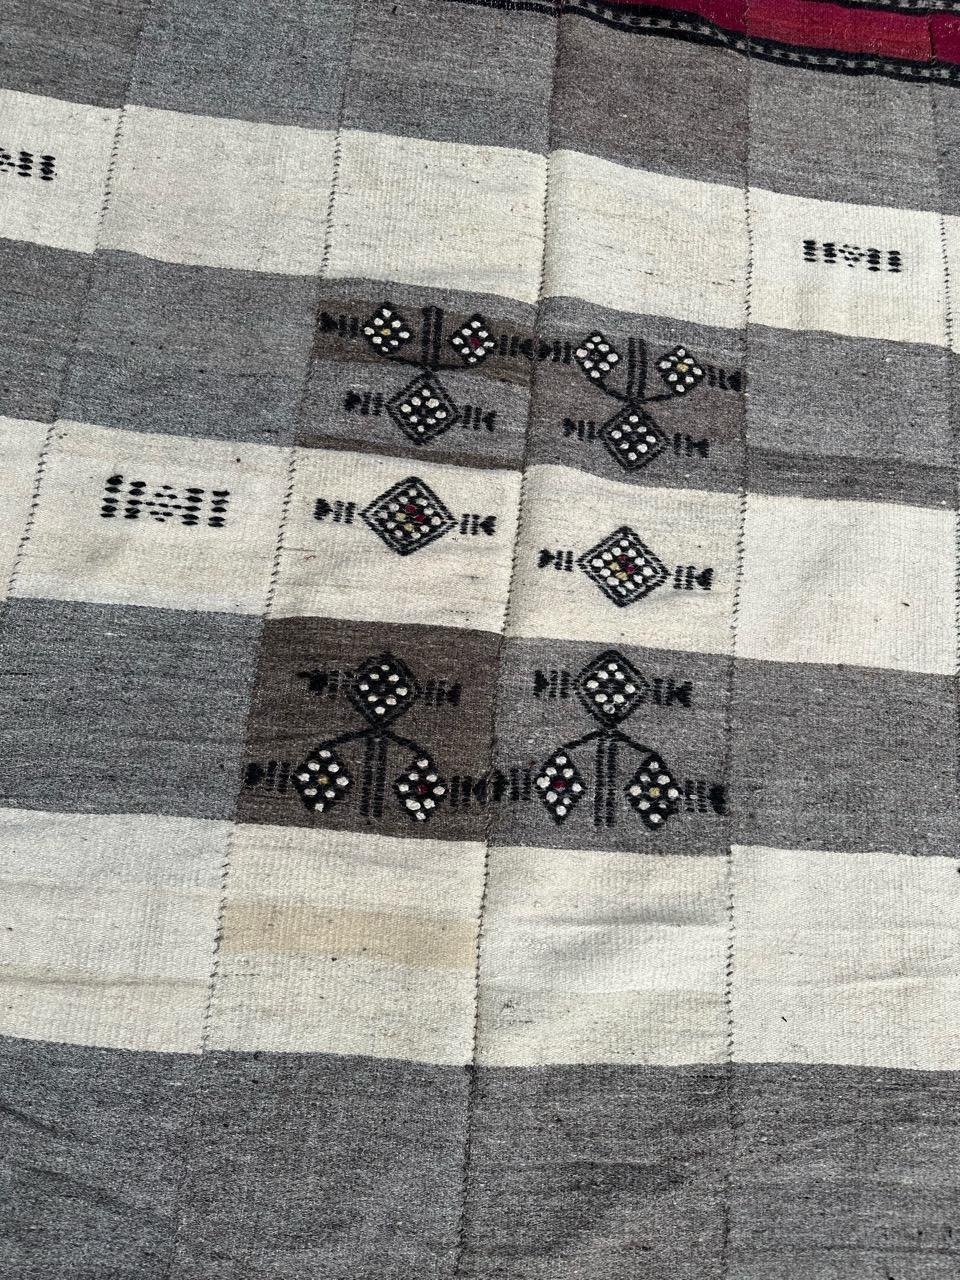 Joli tapis ancien tissé, couverture, avec un beau design géométrique simple et des couleurs claires, entièrement tissé à la main avec de la laine sur une base de laine.

✨✨✨
